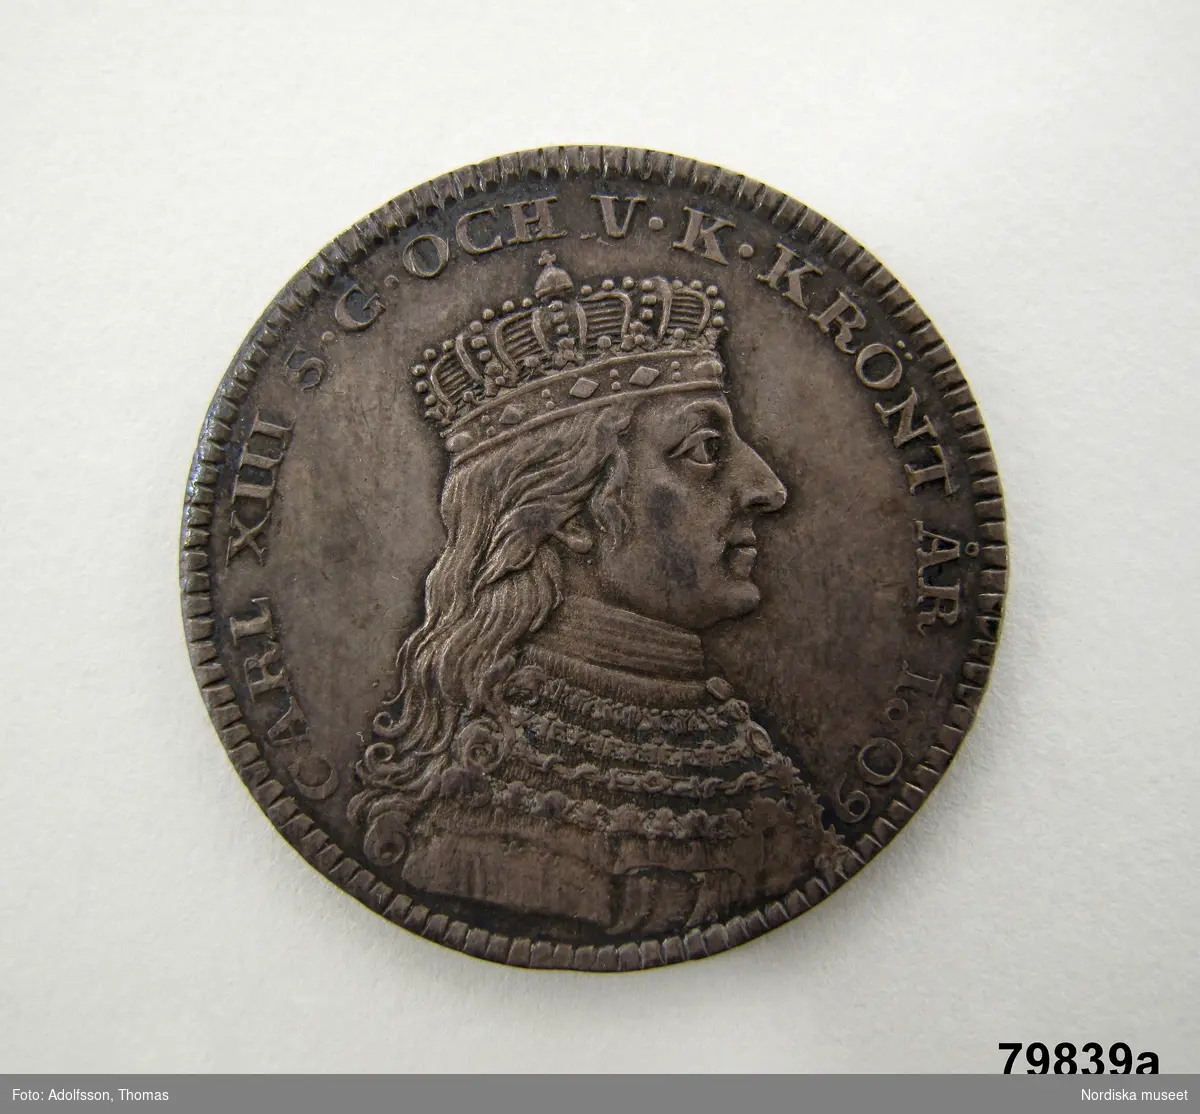 Kung av Sverige, regent 1809-1818. Även Kung av Norge 1814-1818